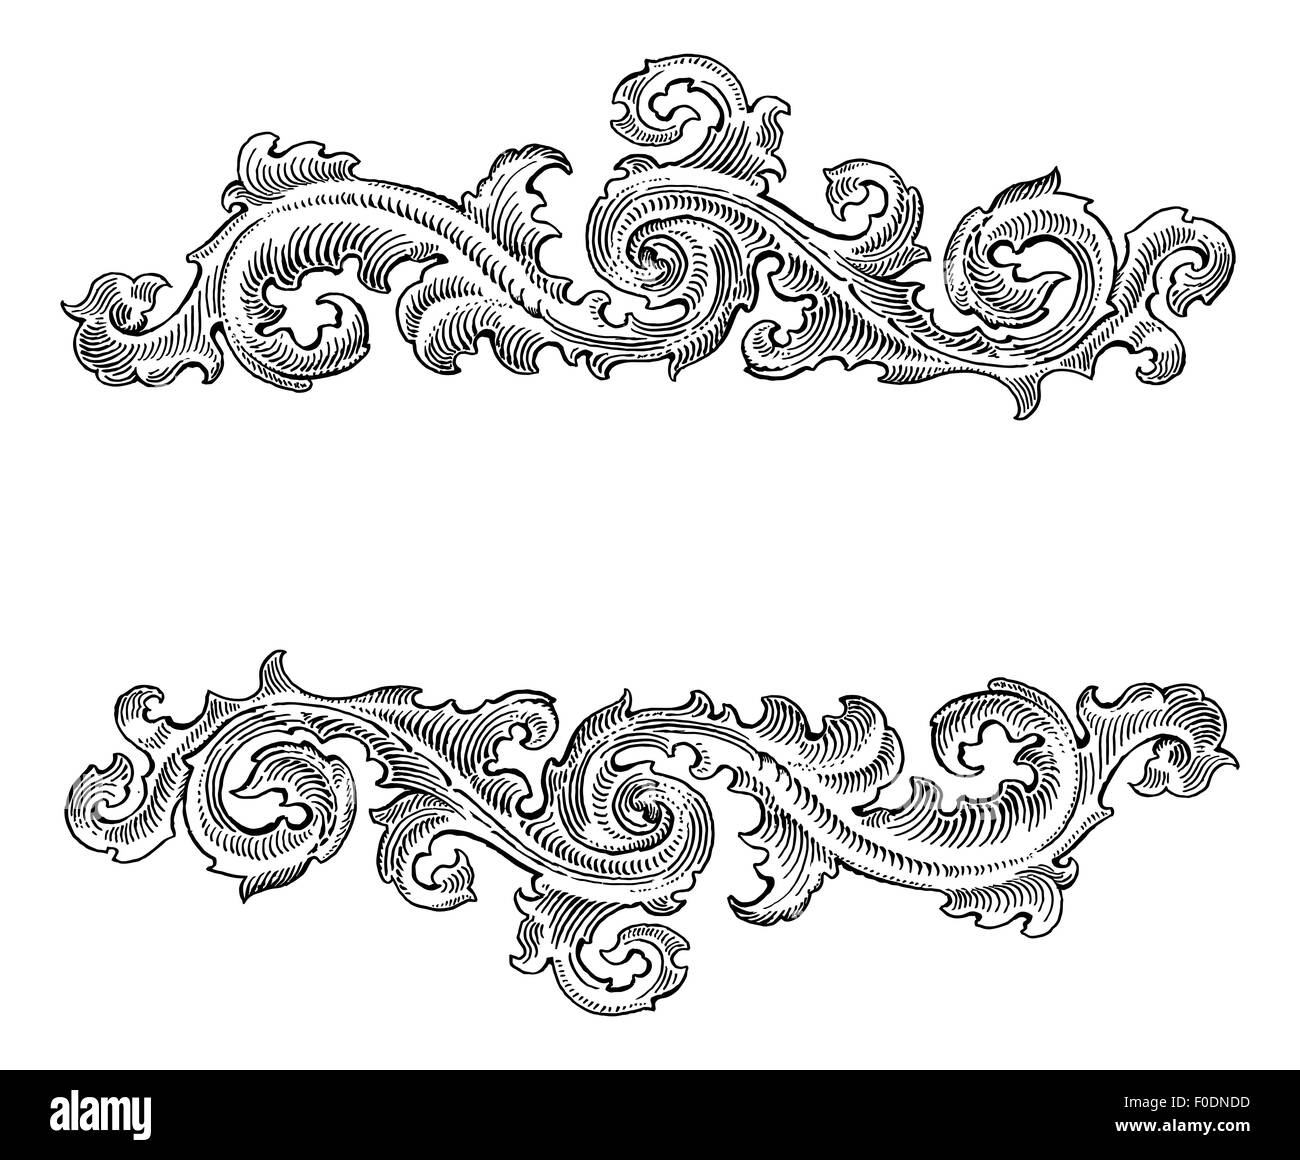 Arte barroco Imágenes de stock en blanco y negro - Alamy